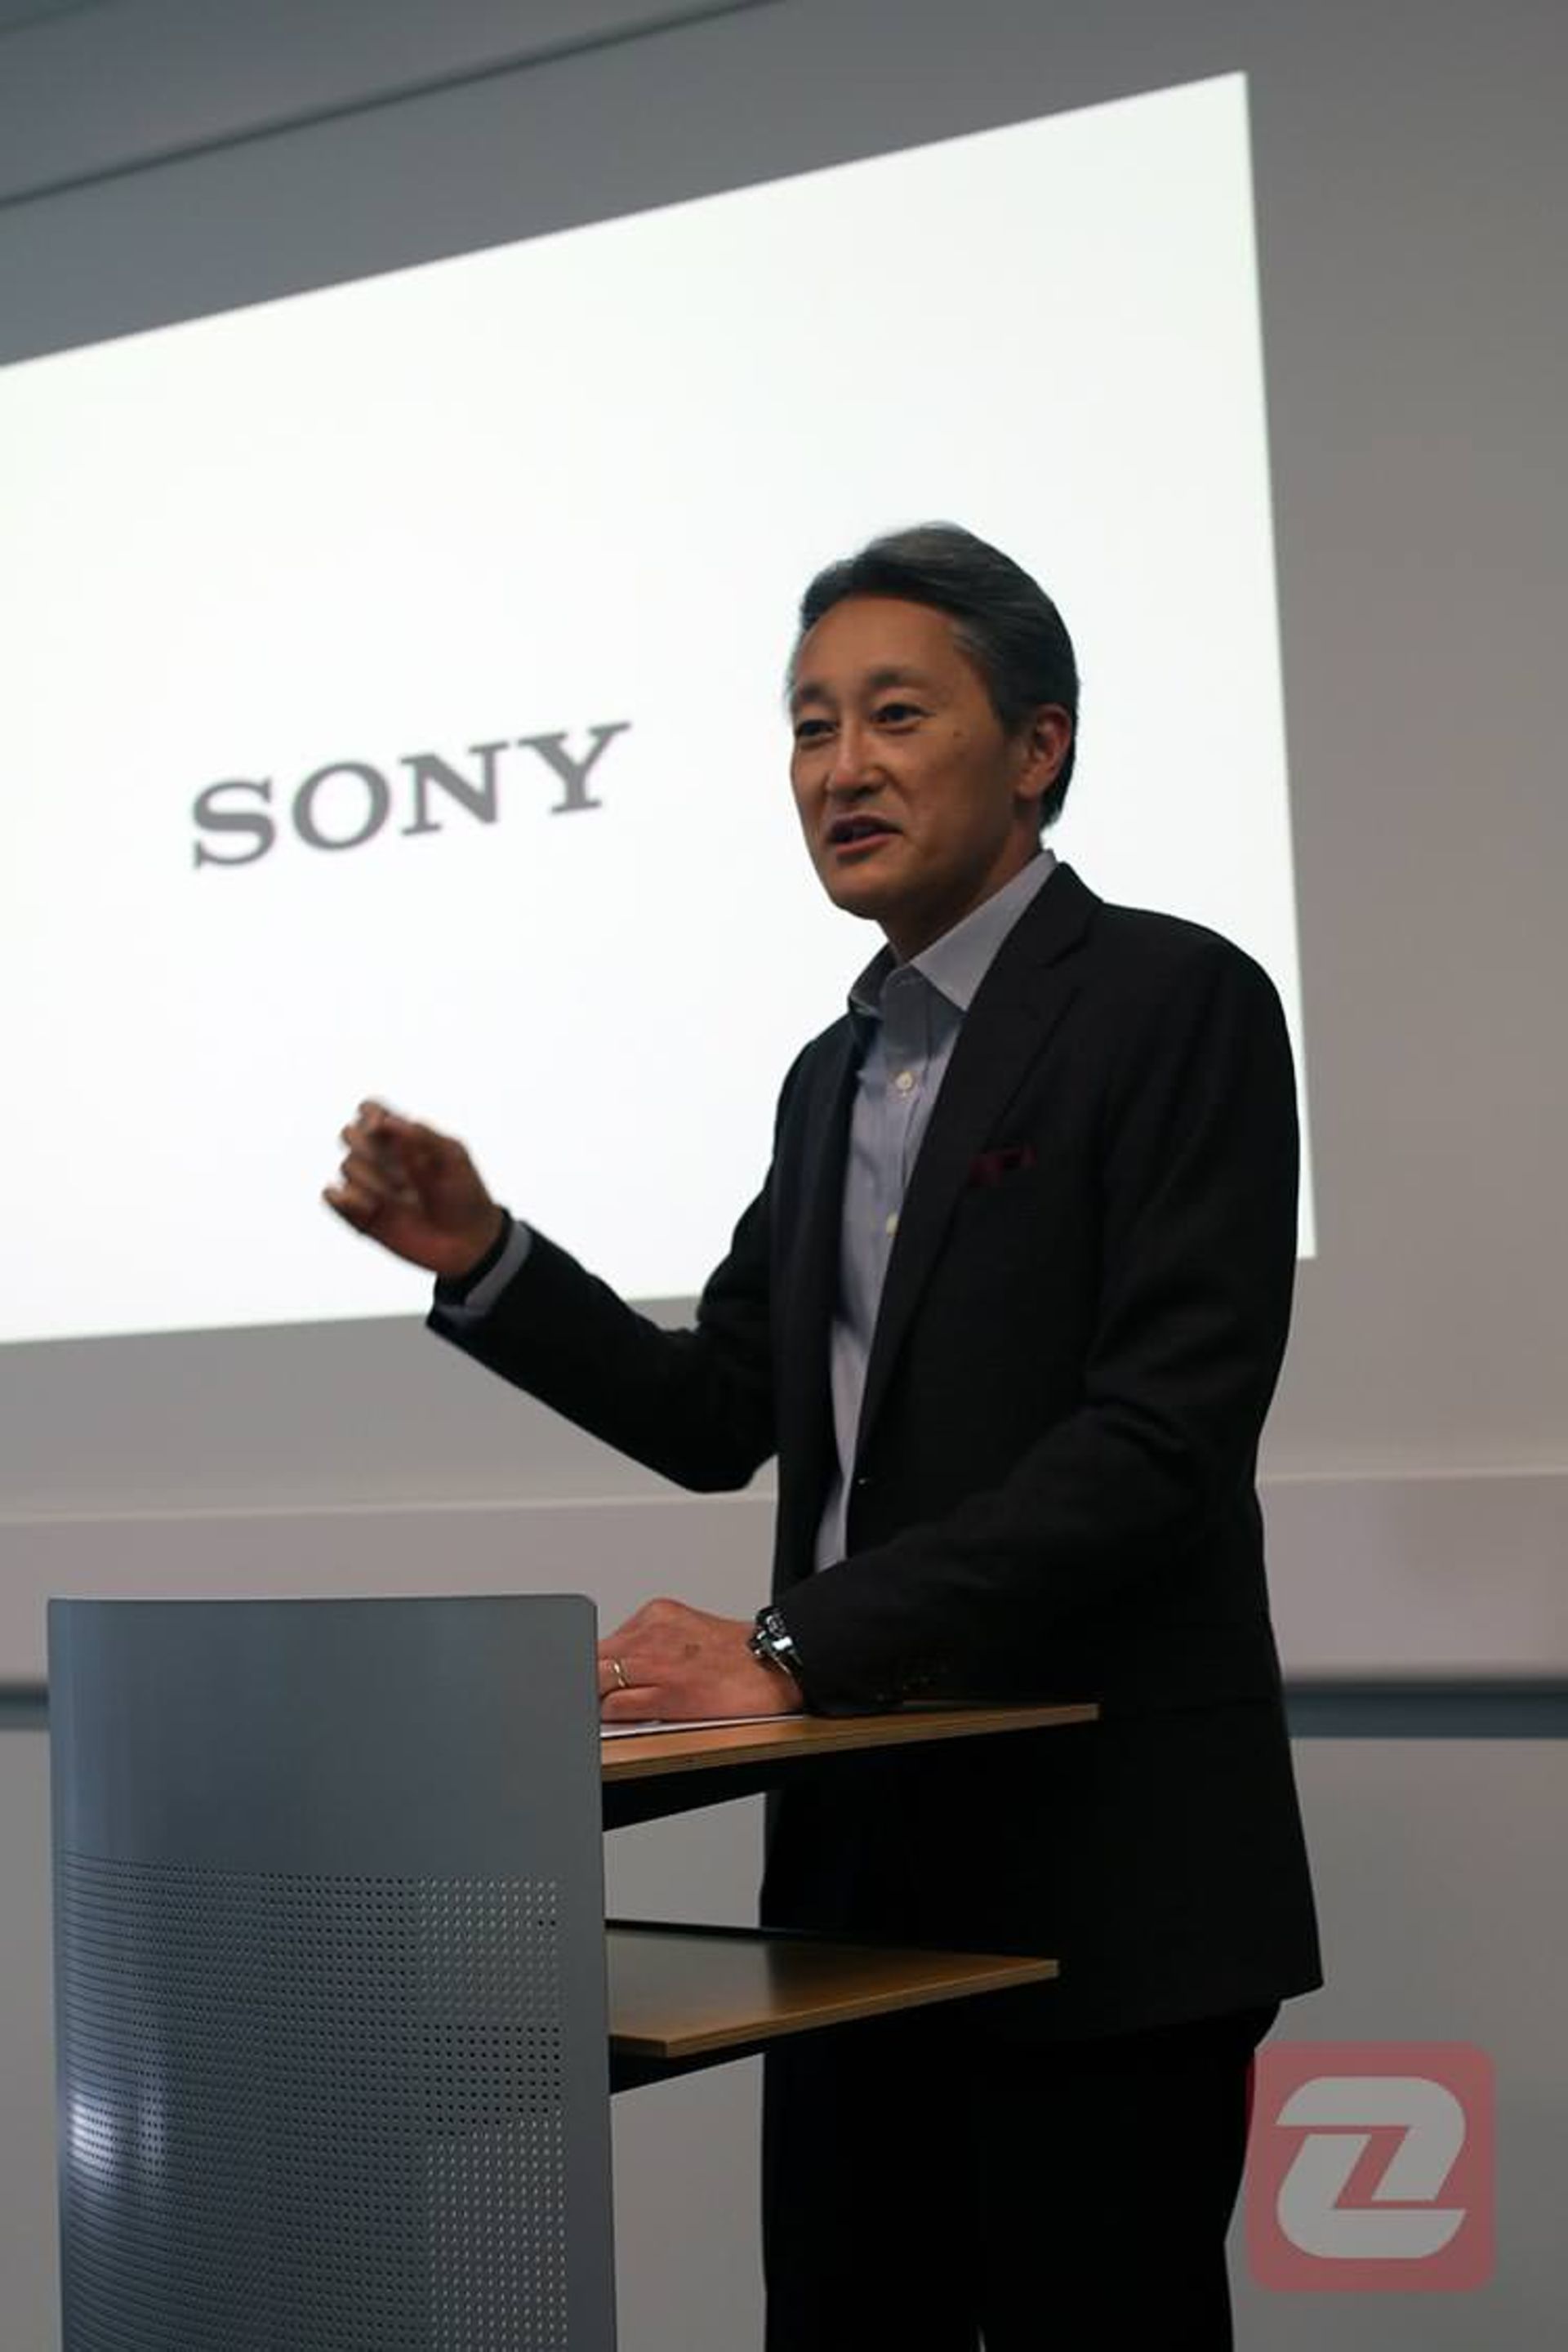 کازو هیرای - مدیرعامل سونی